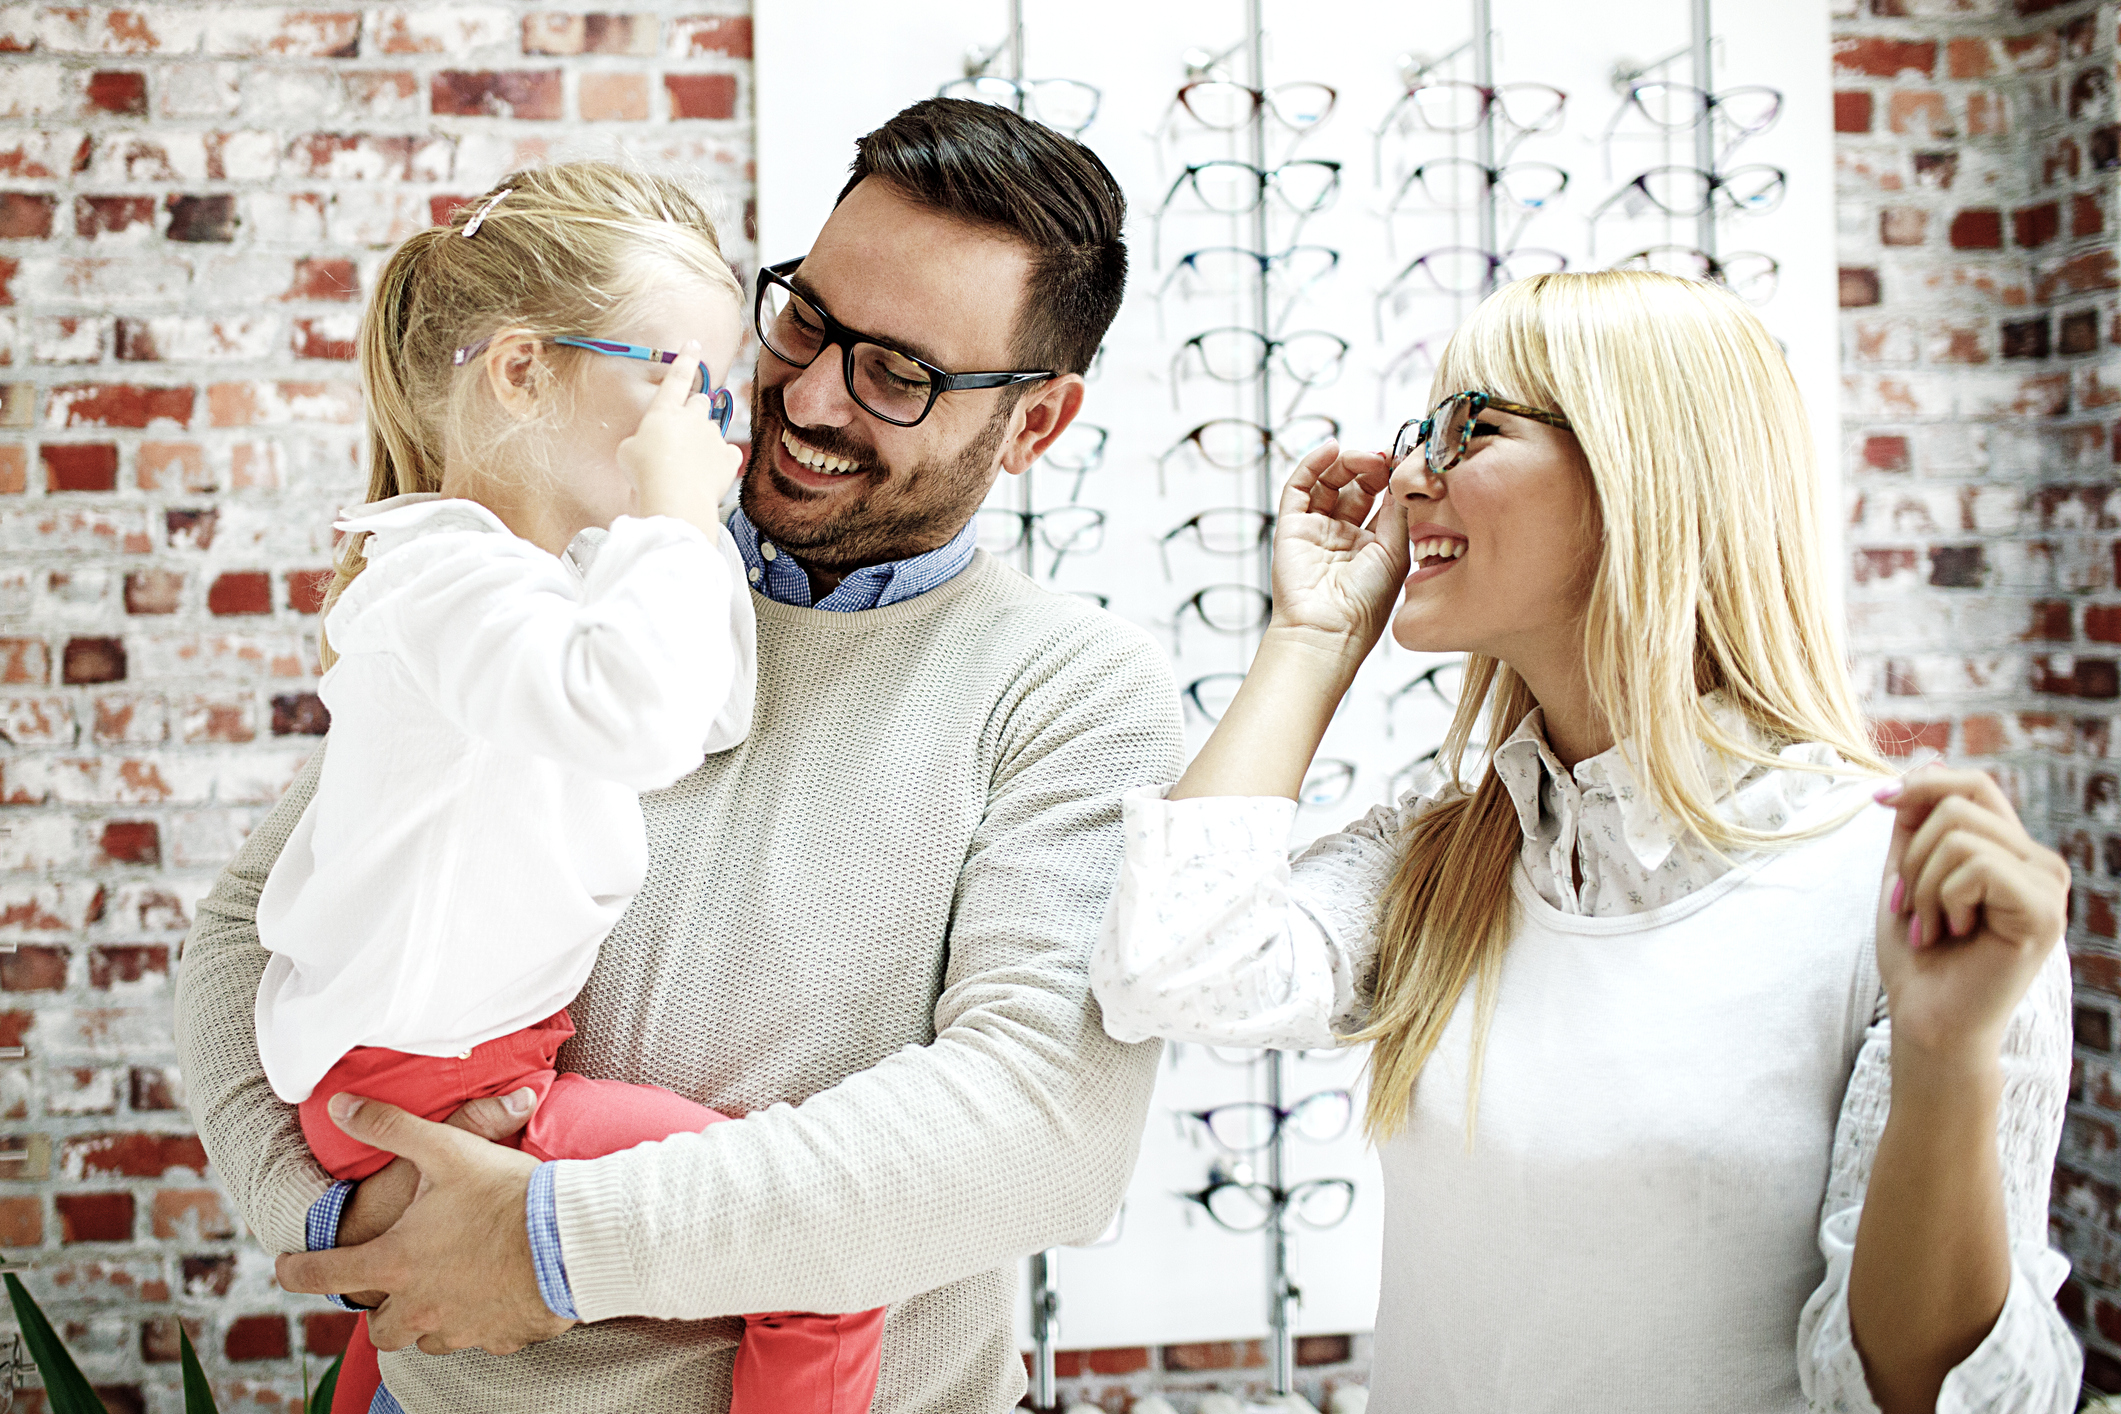 Montures de lunette enfant : comment les choisir ? - Vue d'Enfant